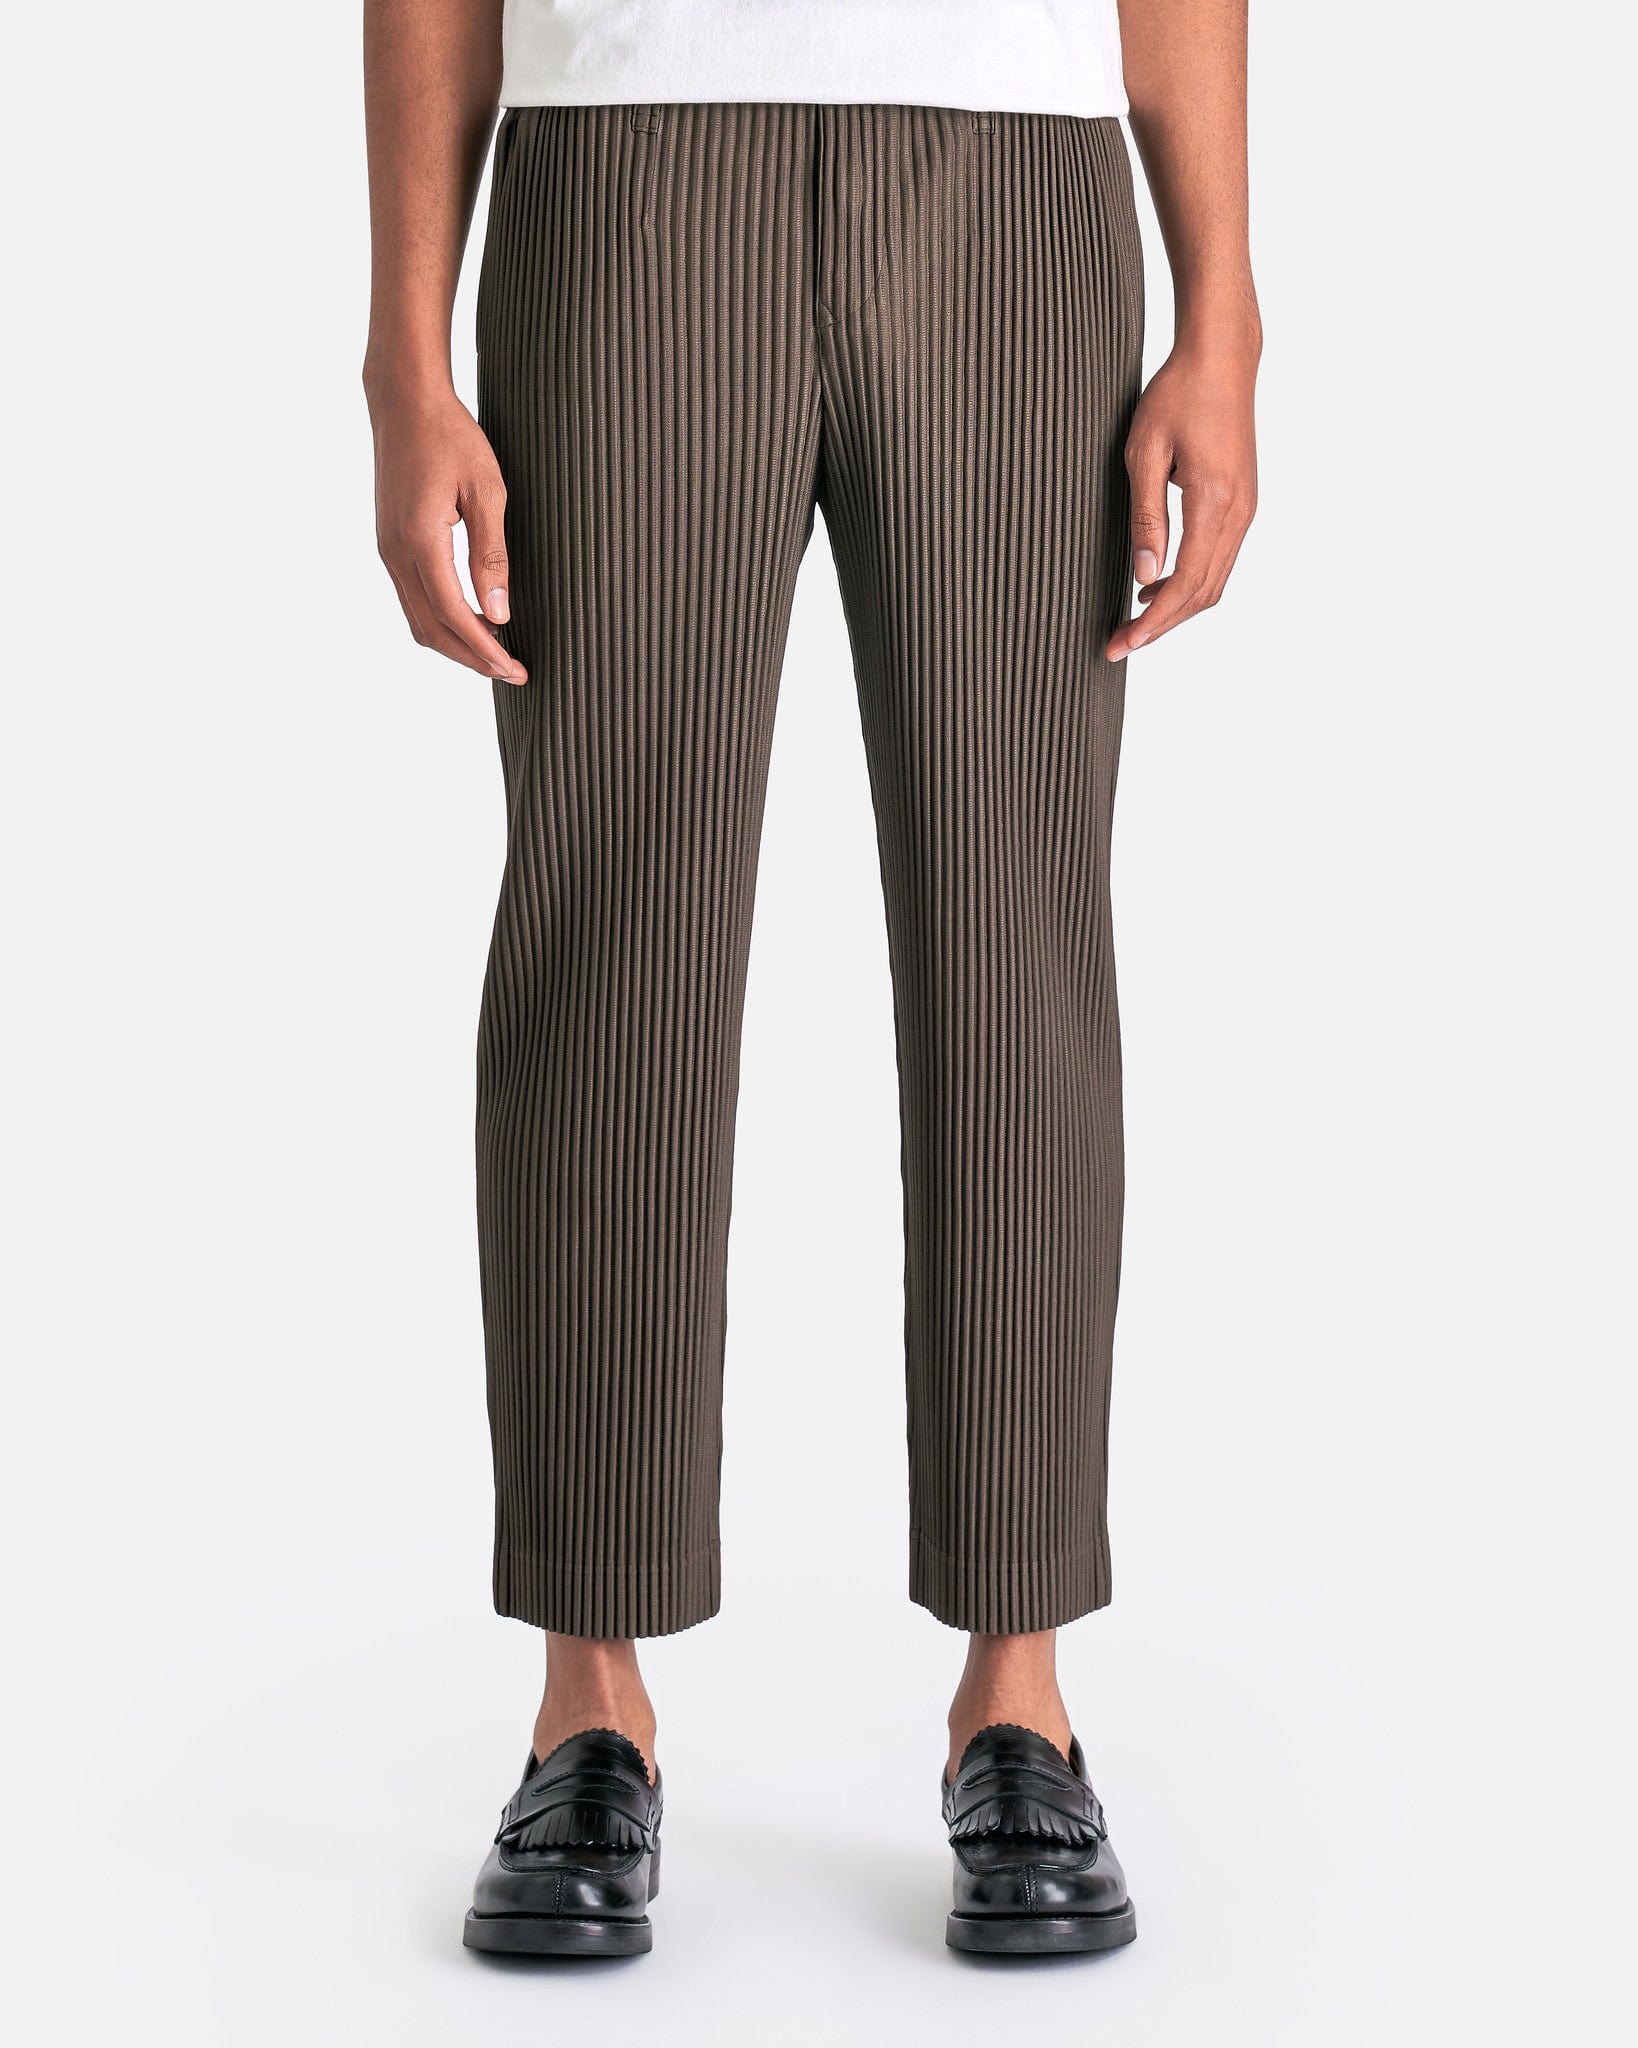 Tailored Pleats 1 Pants in Dark Khaki